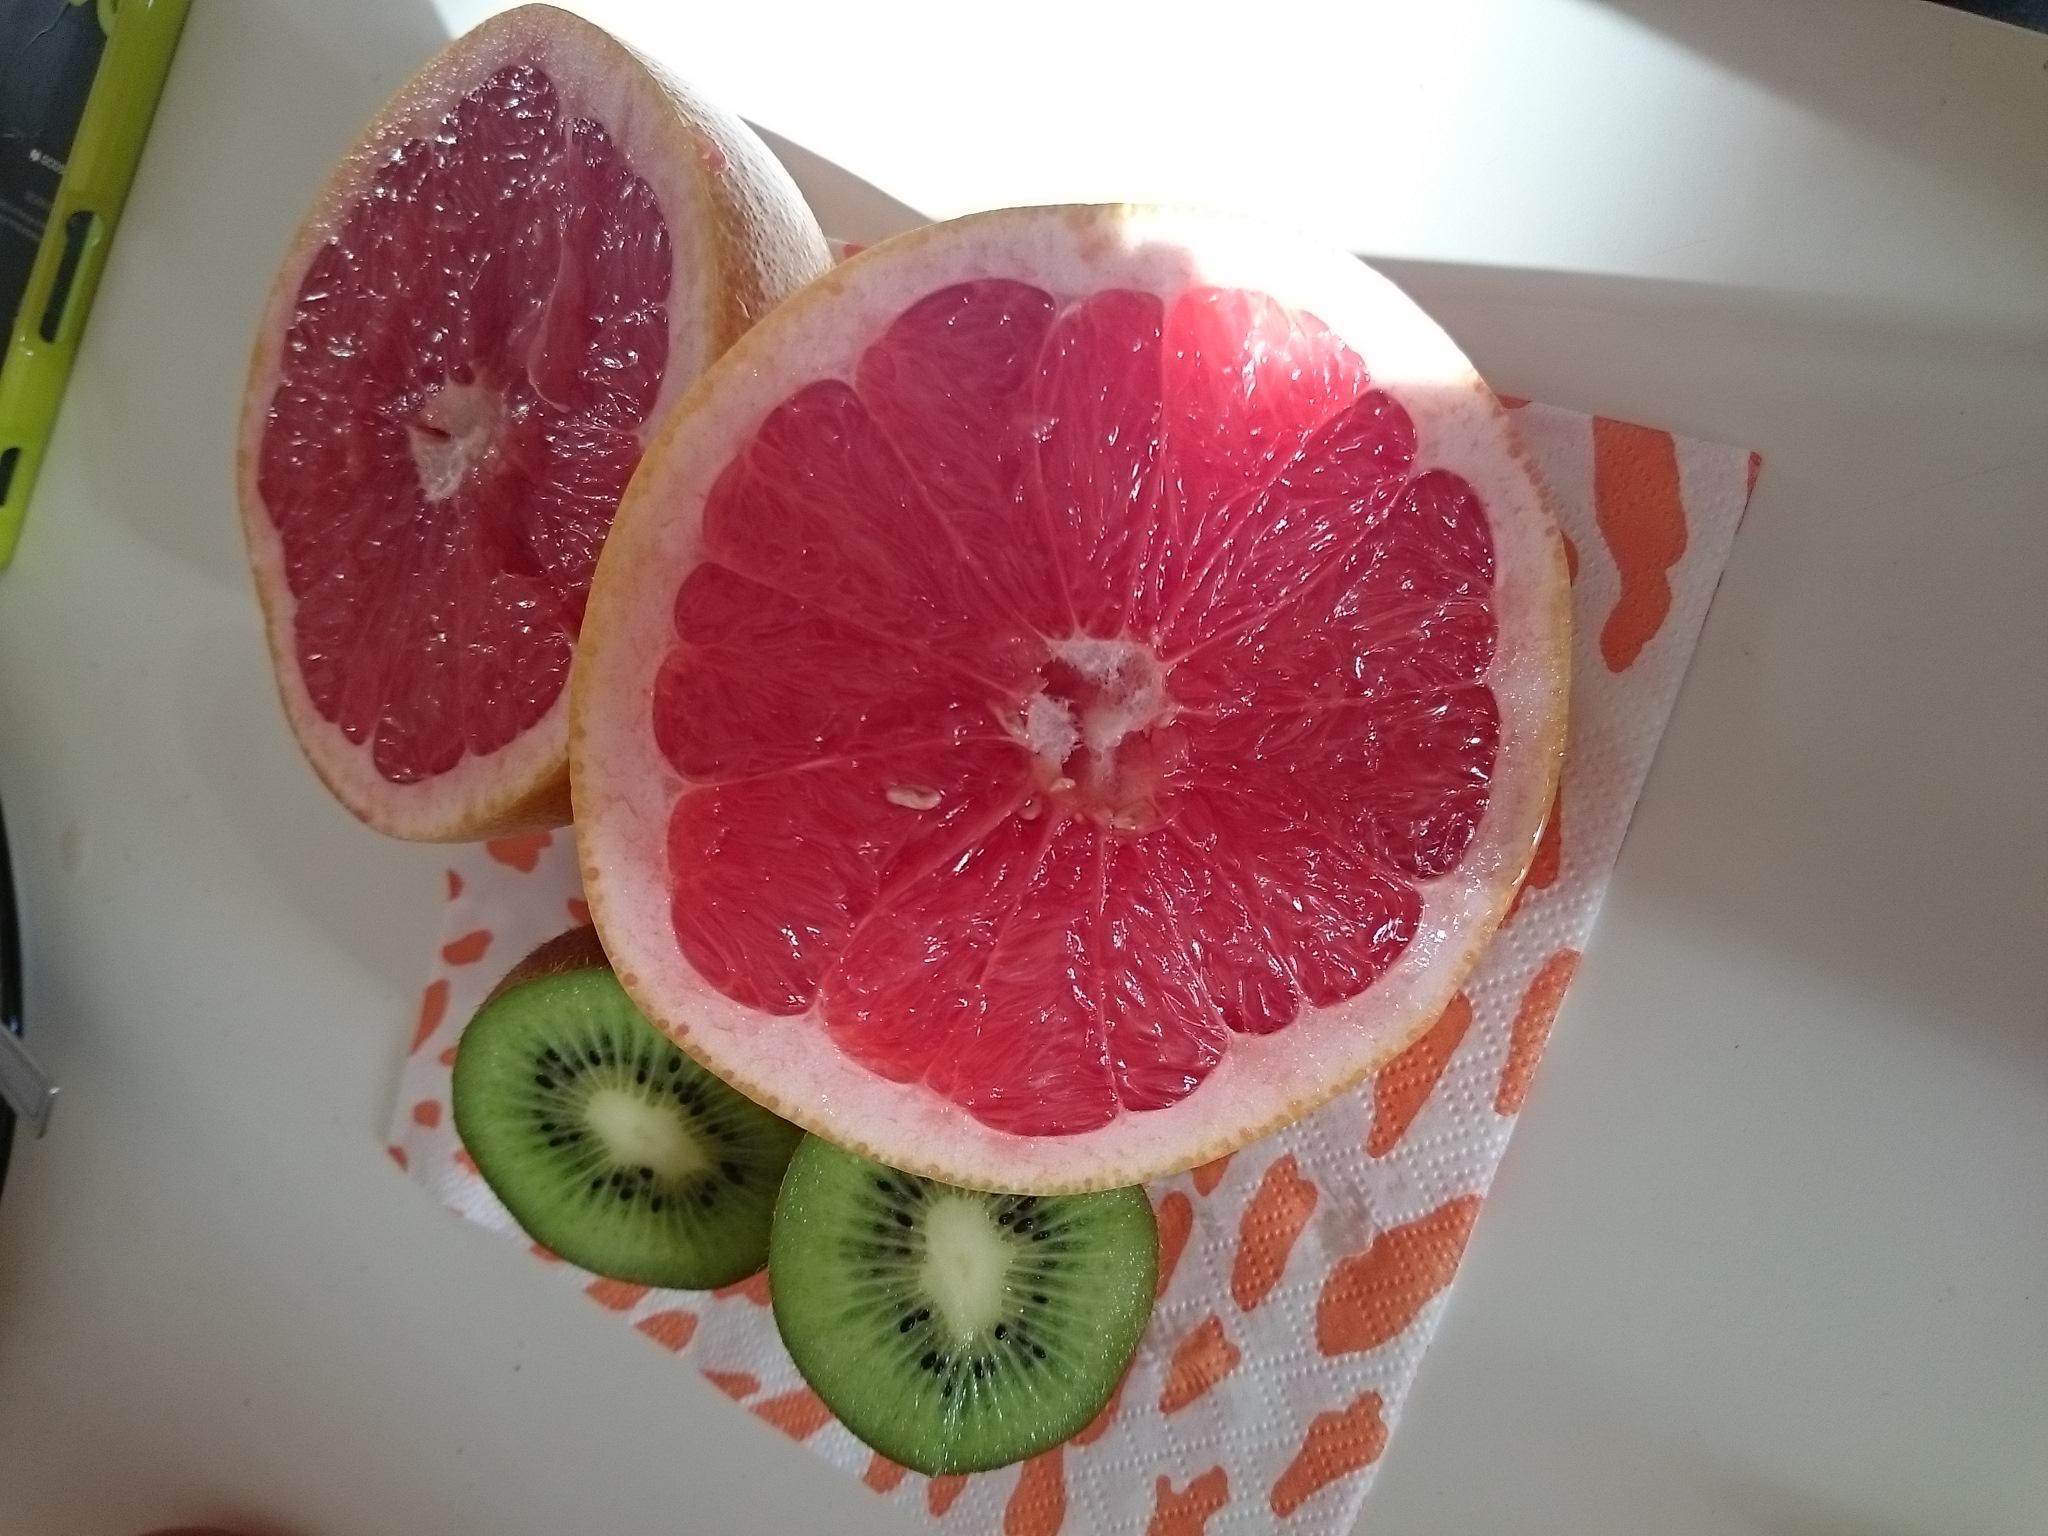 Owoce egzotyczne w lodówce